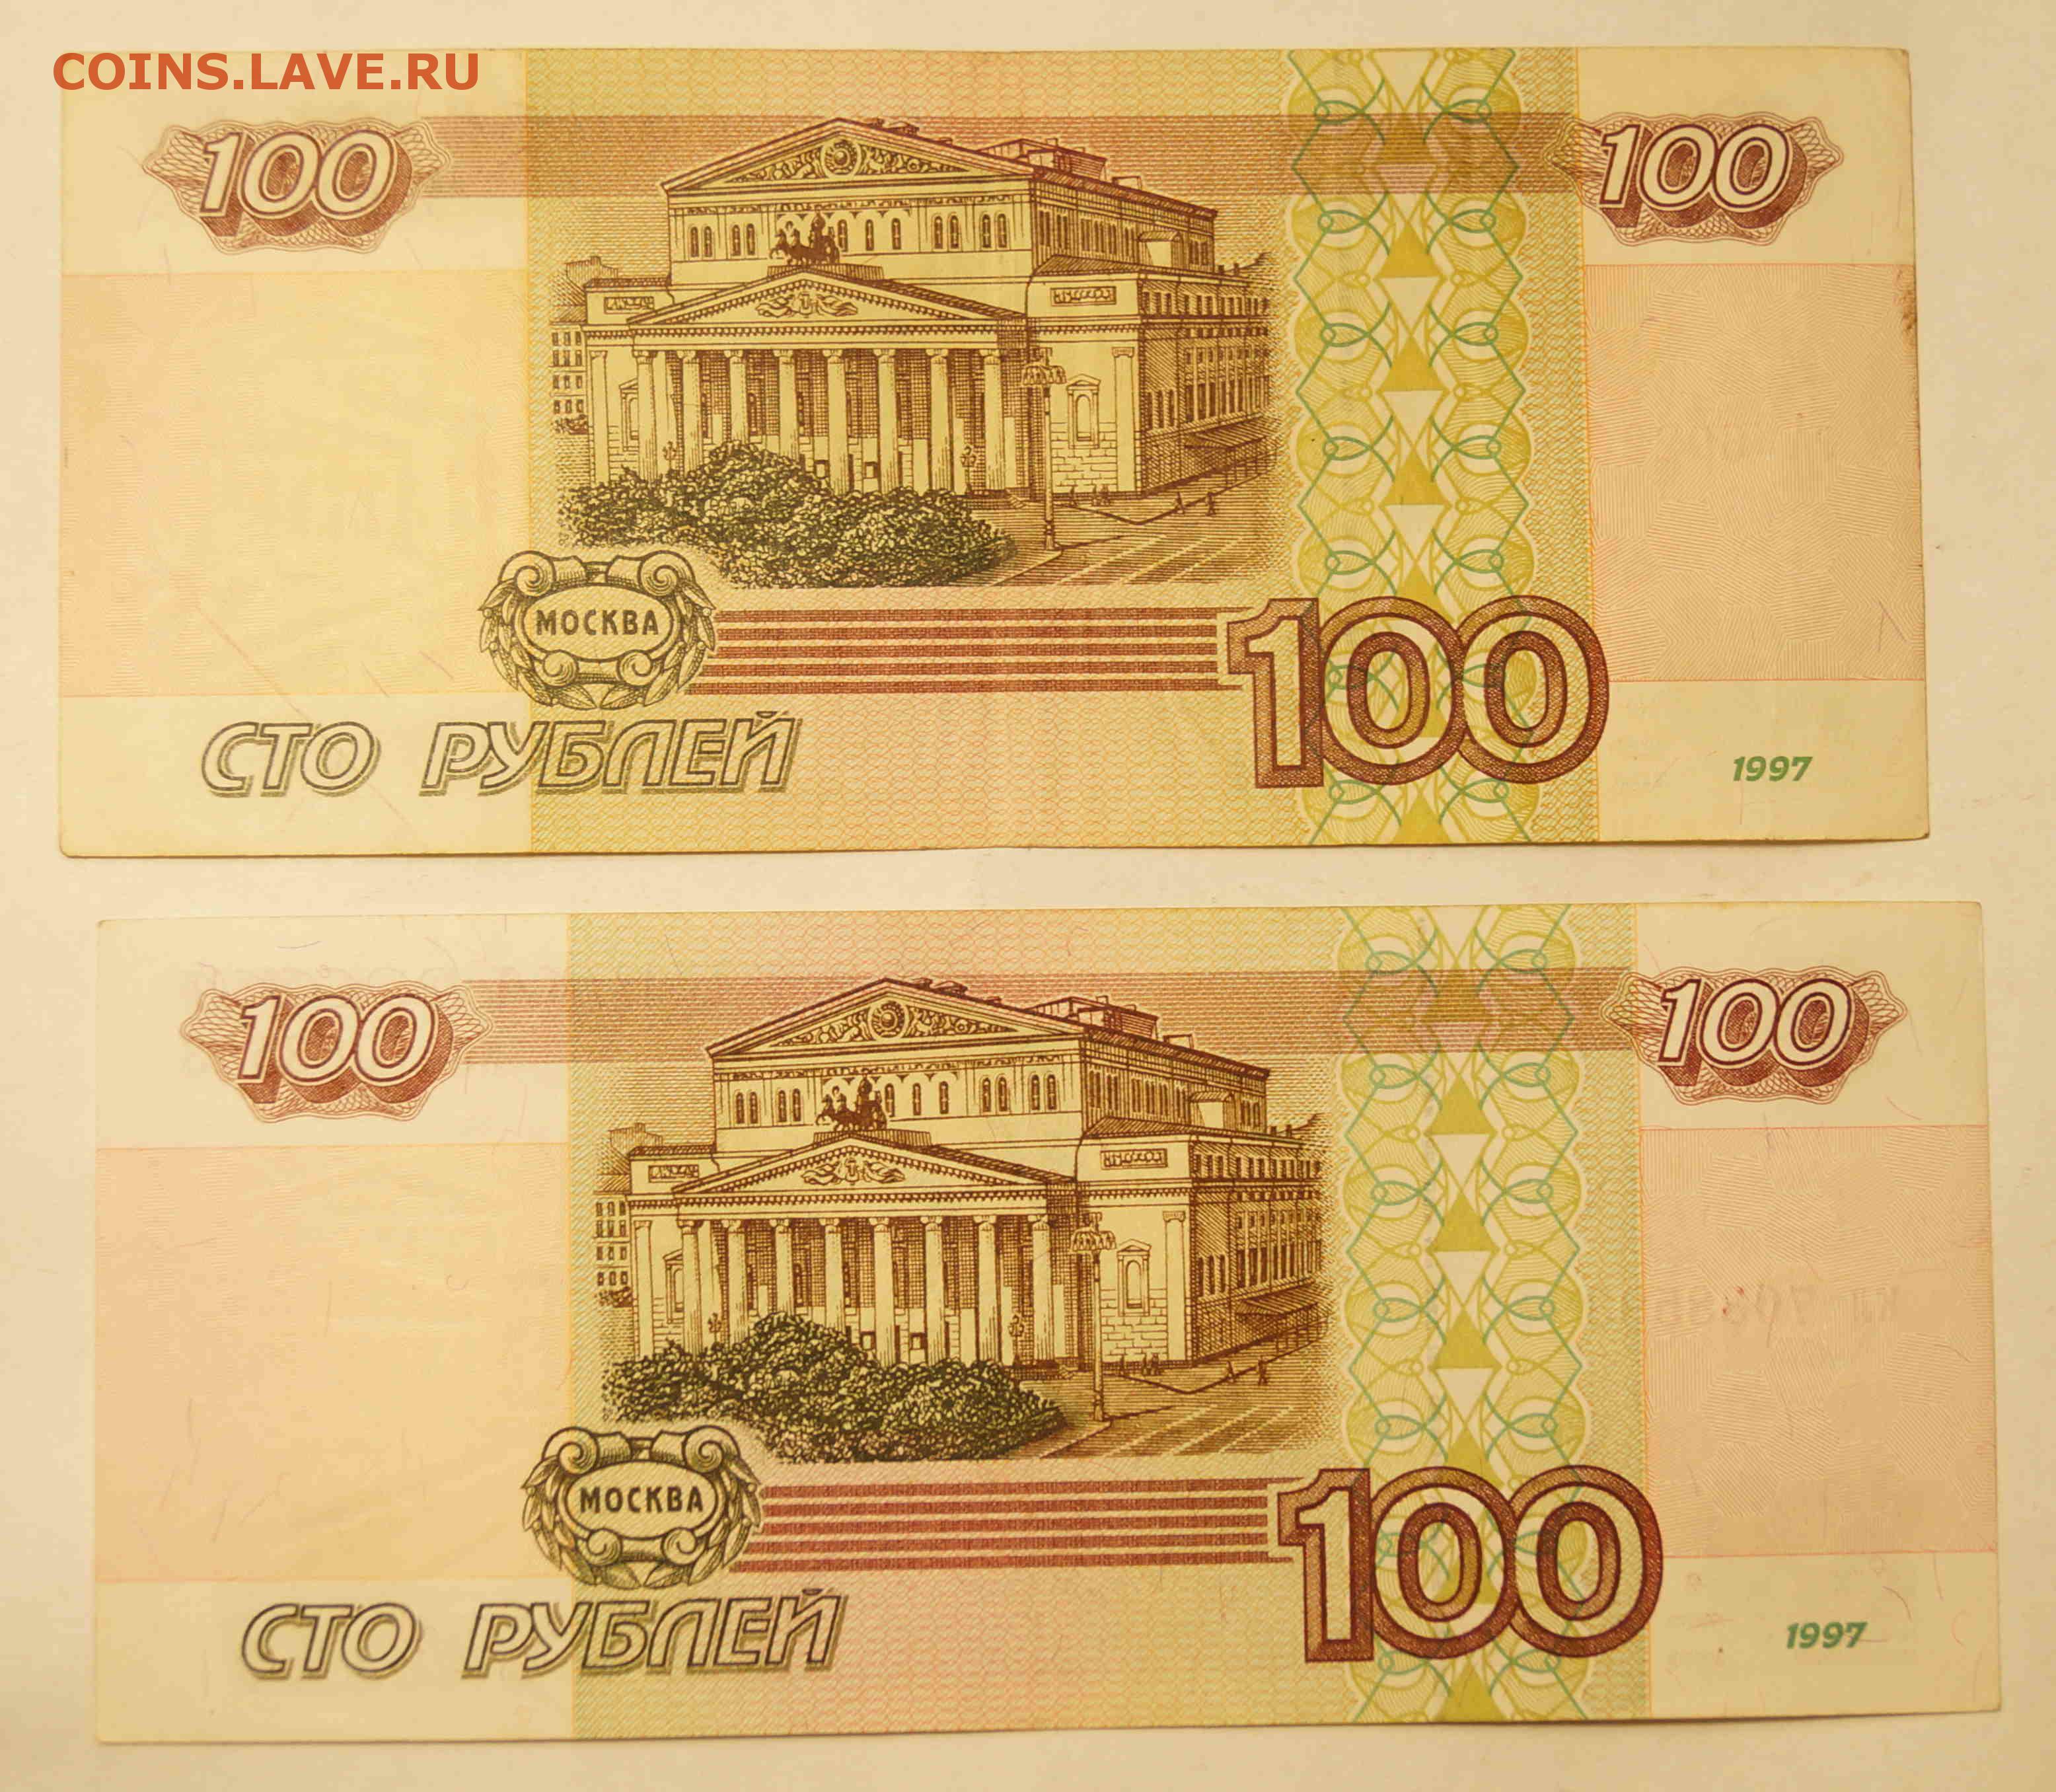 100.000 2. Купюра 100 тысяч рублей 1995. СТО тысяч рублей купюра. 100 000 Рублей 1995 года. Купюра 100.000 руб.